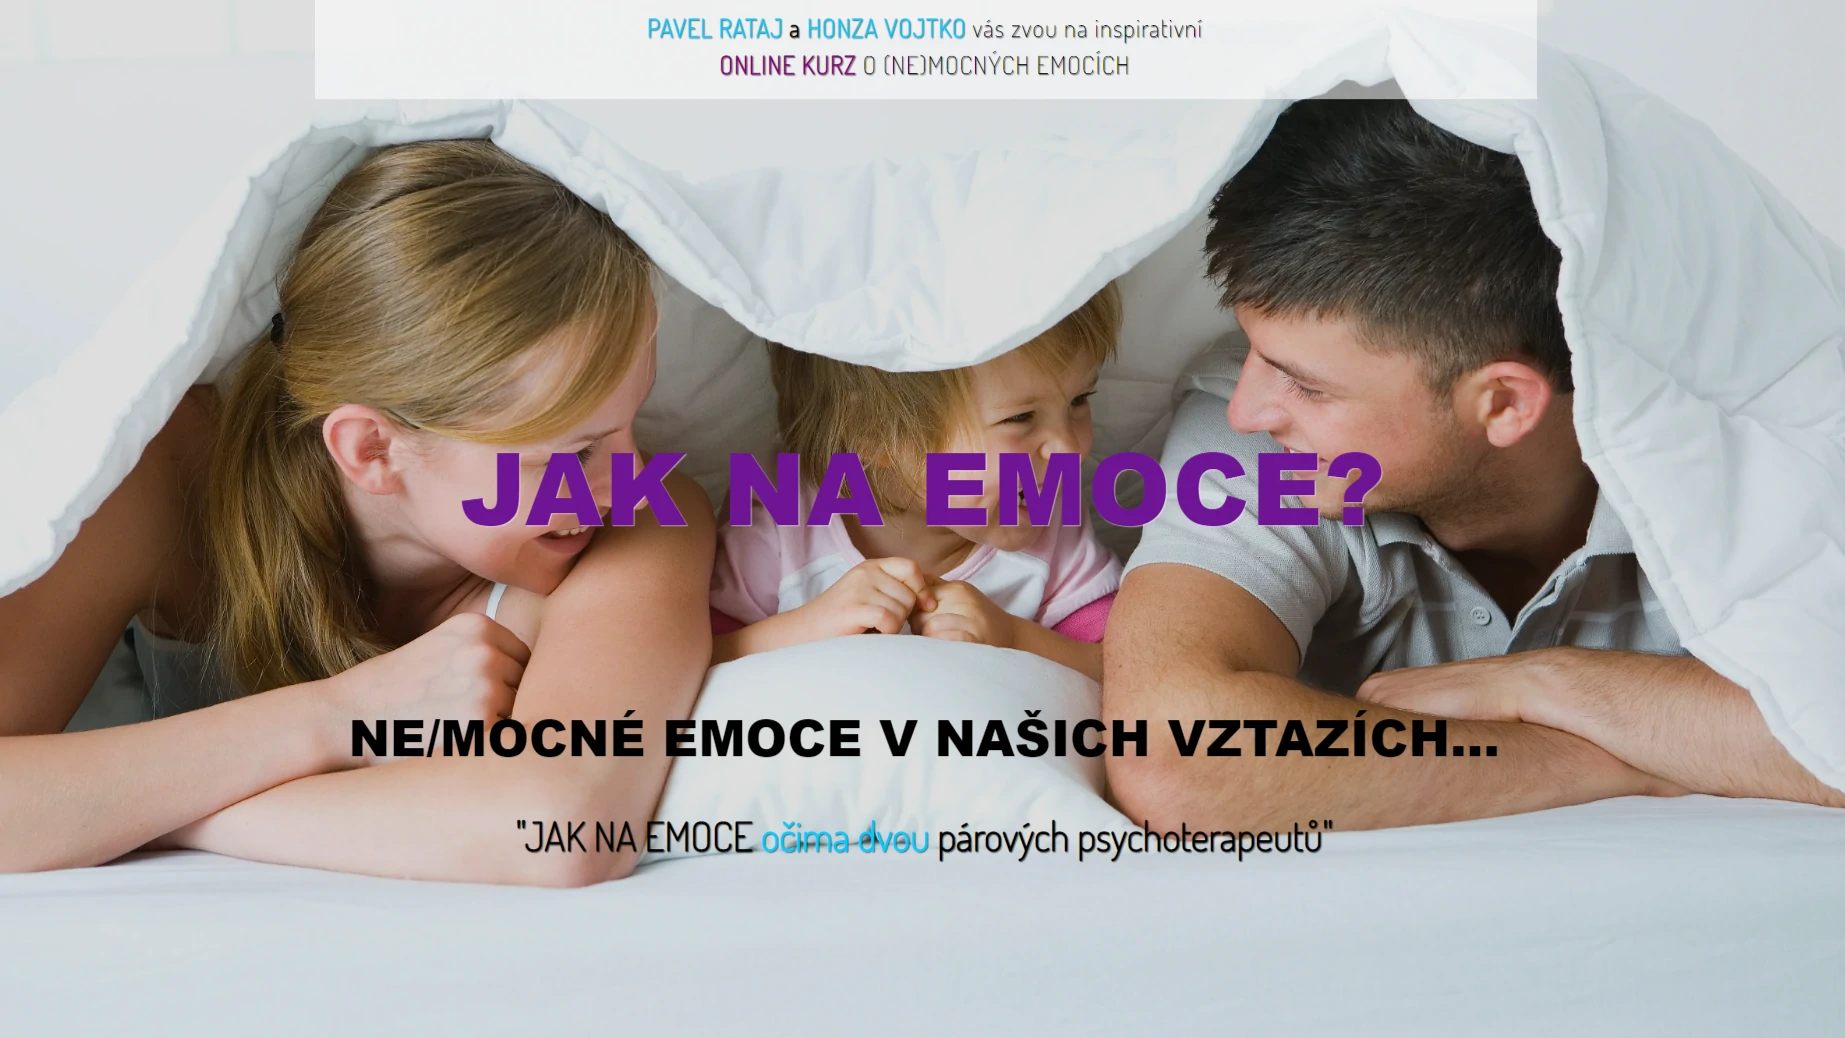 JAK NA EMOCE - www.pavelrataj.cz